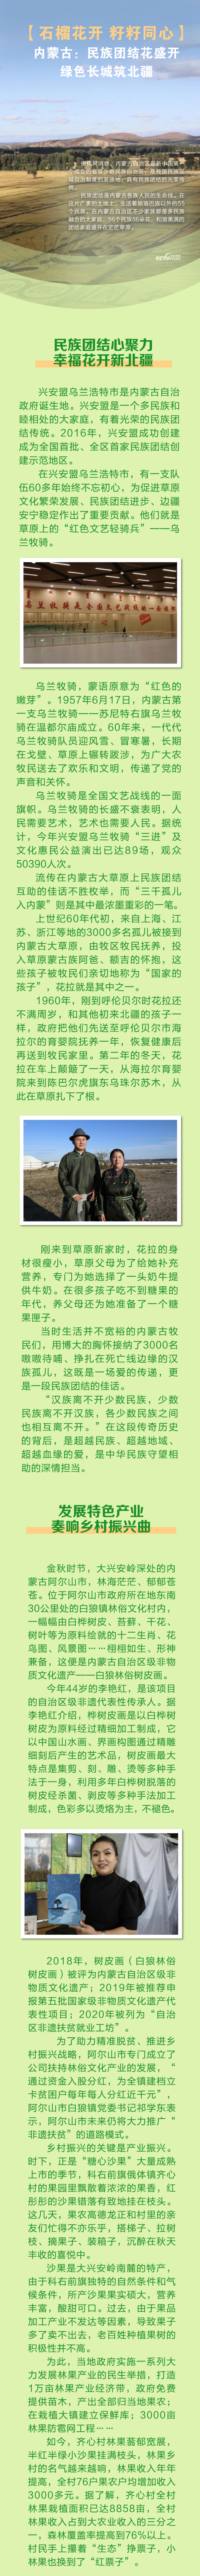 【石榴花开 籽籽同心】内蒙古：民族团结花盛开 绿色长城筑北疆